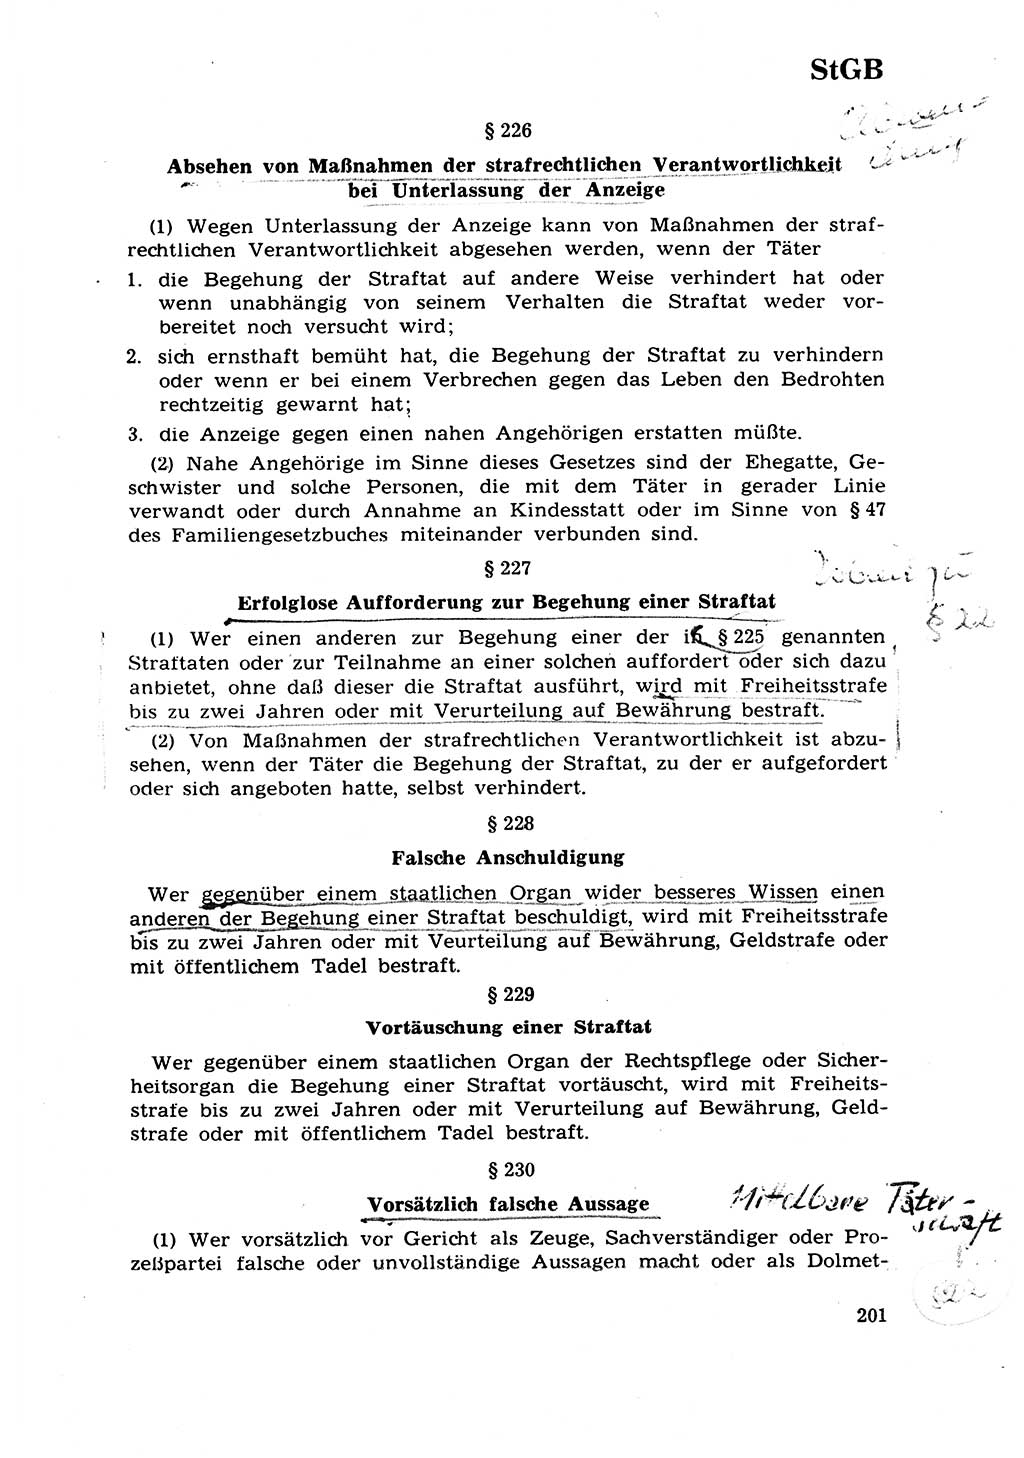 Strafrecht [Deutsche Demokratische Republik (DDR)] 1968, Seite 201 (Strafr. DDR 1968, S. 201)